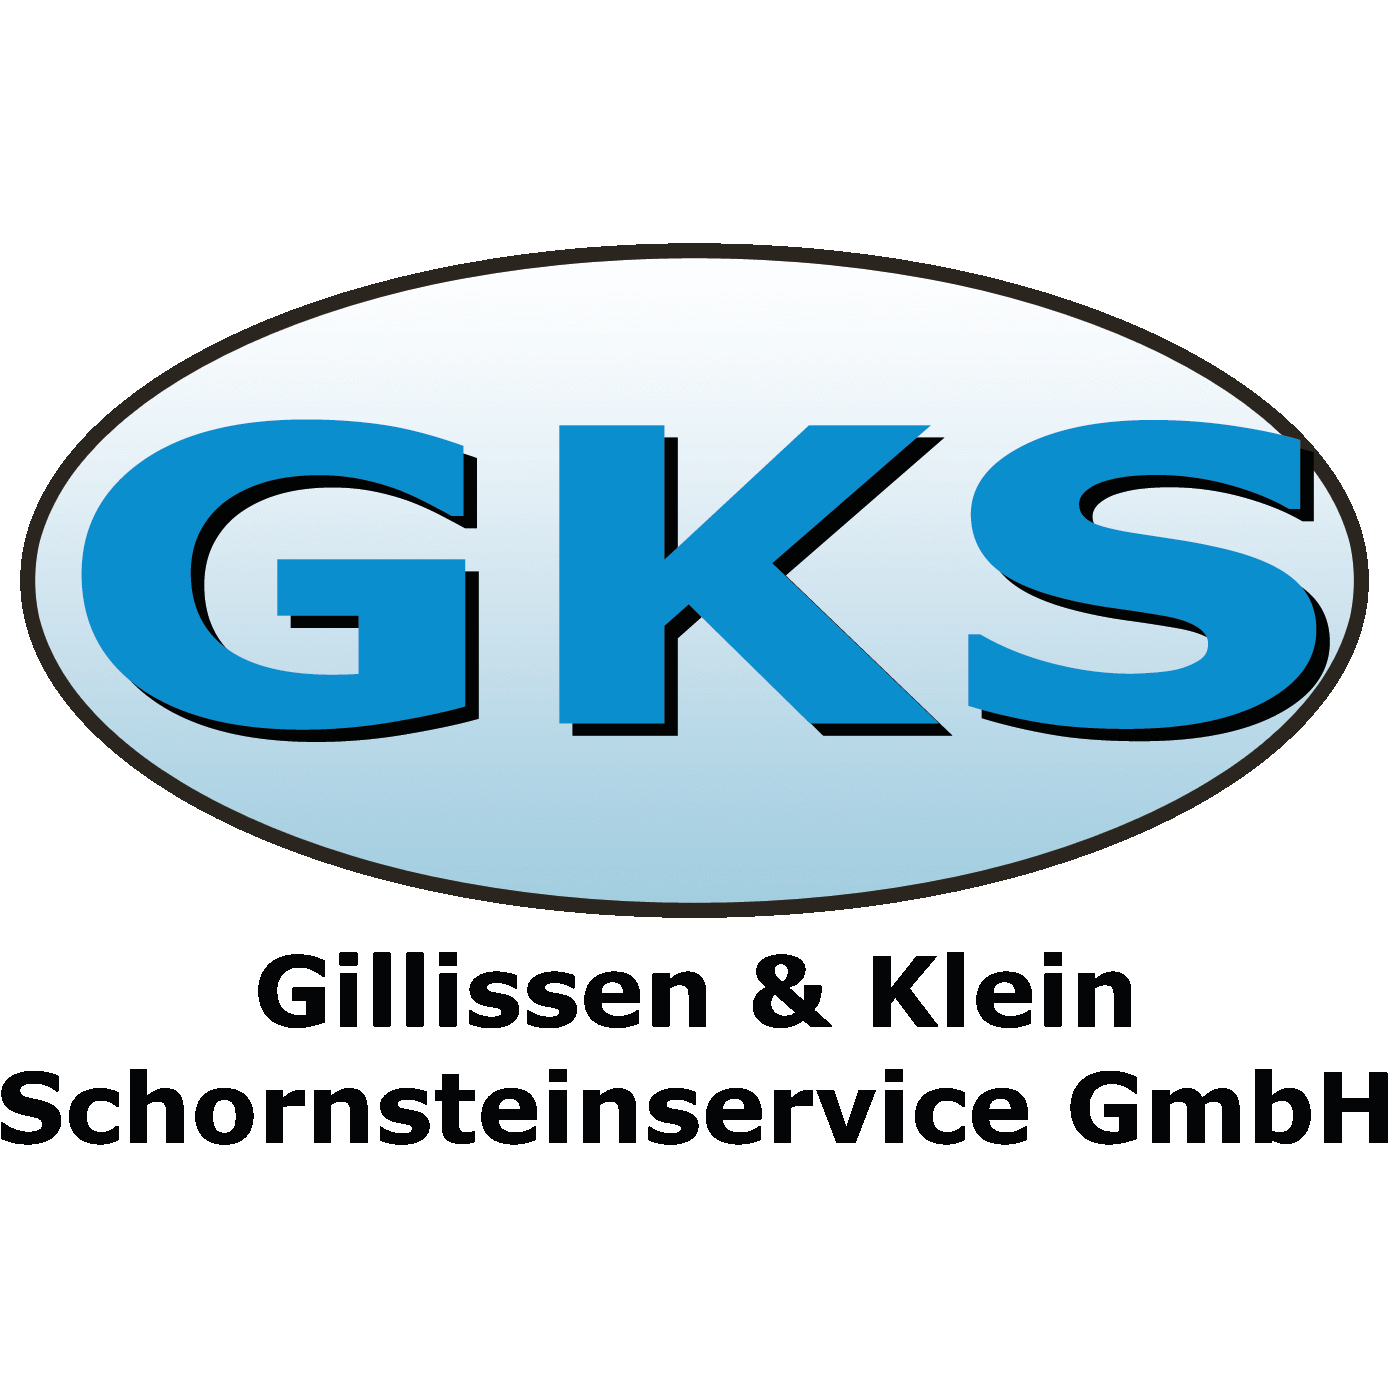 GKS Gillissen & Klein Schornsteinservice, Kaminofen, Kamin Ausstellung